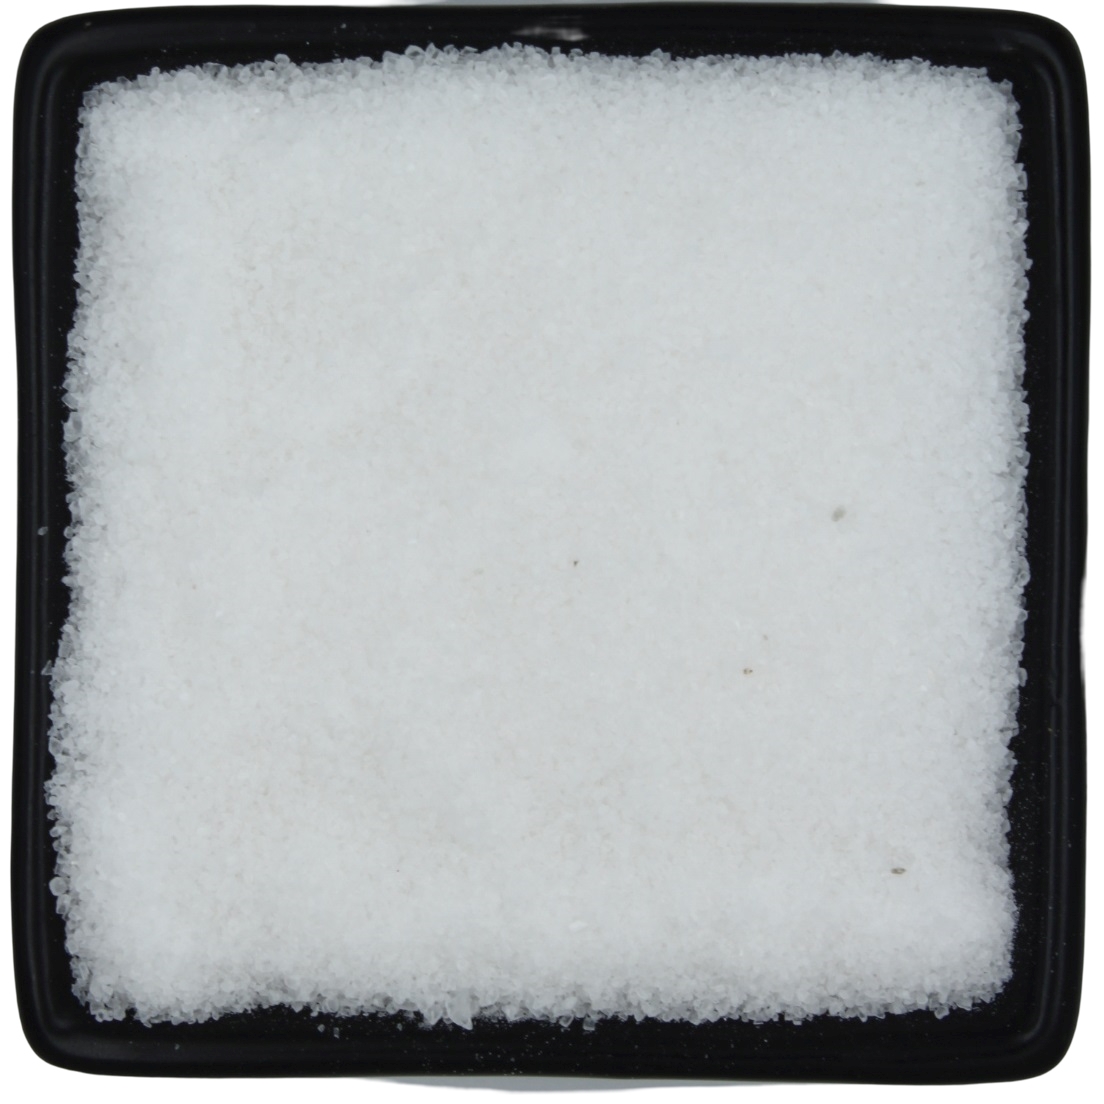 Himalaya-Salz - Weiß - Extra fein - 500g